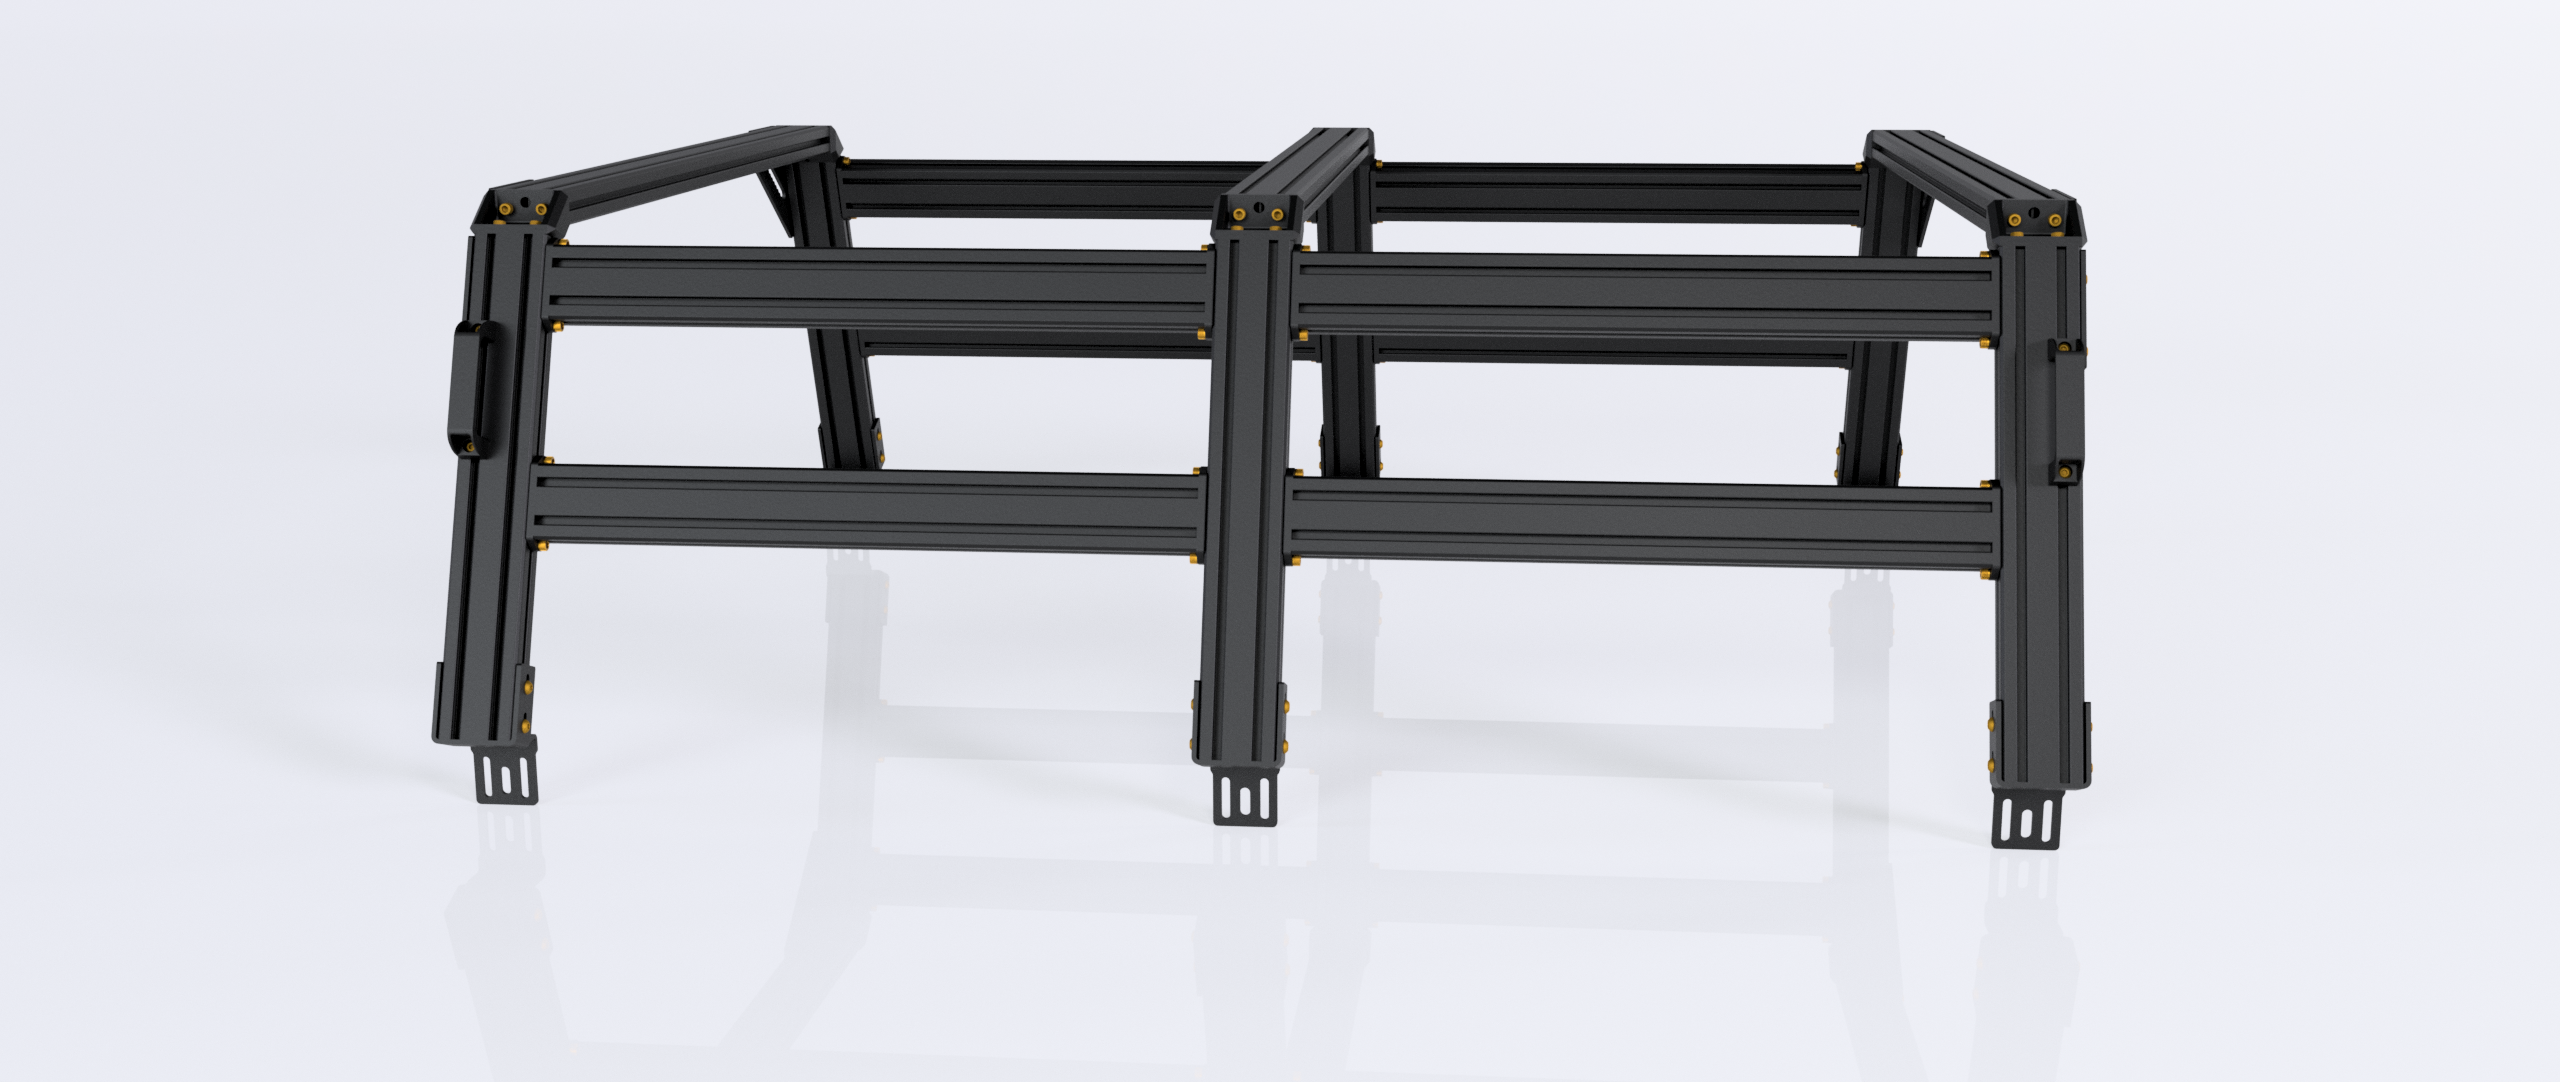 XTR3 Bed Rack for Silverado & Sierra 2500/3500HD